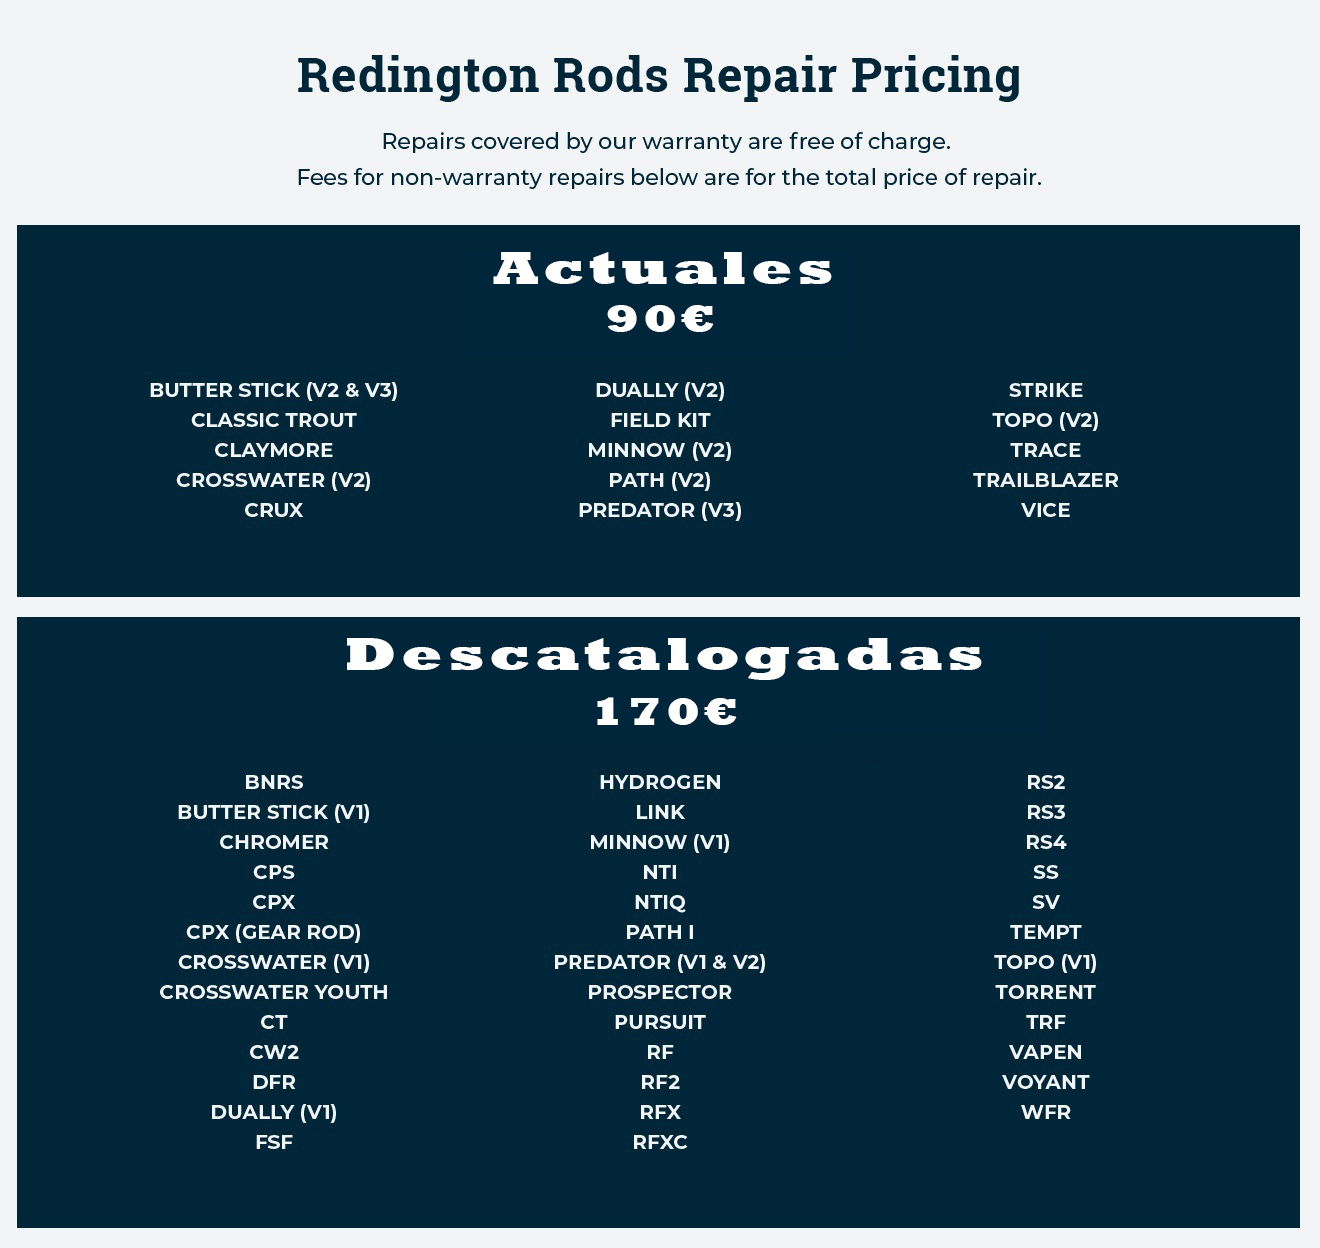 REDINGTONRepair_Pricing